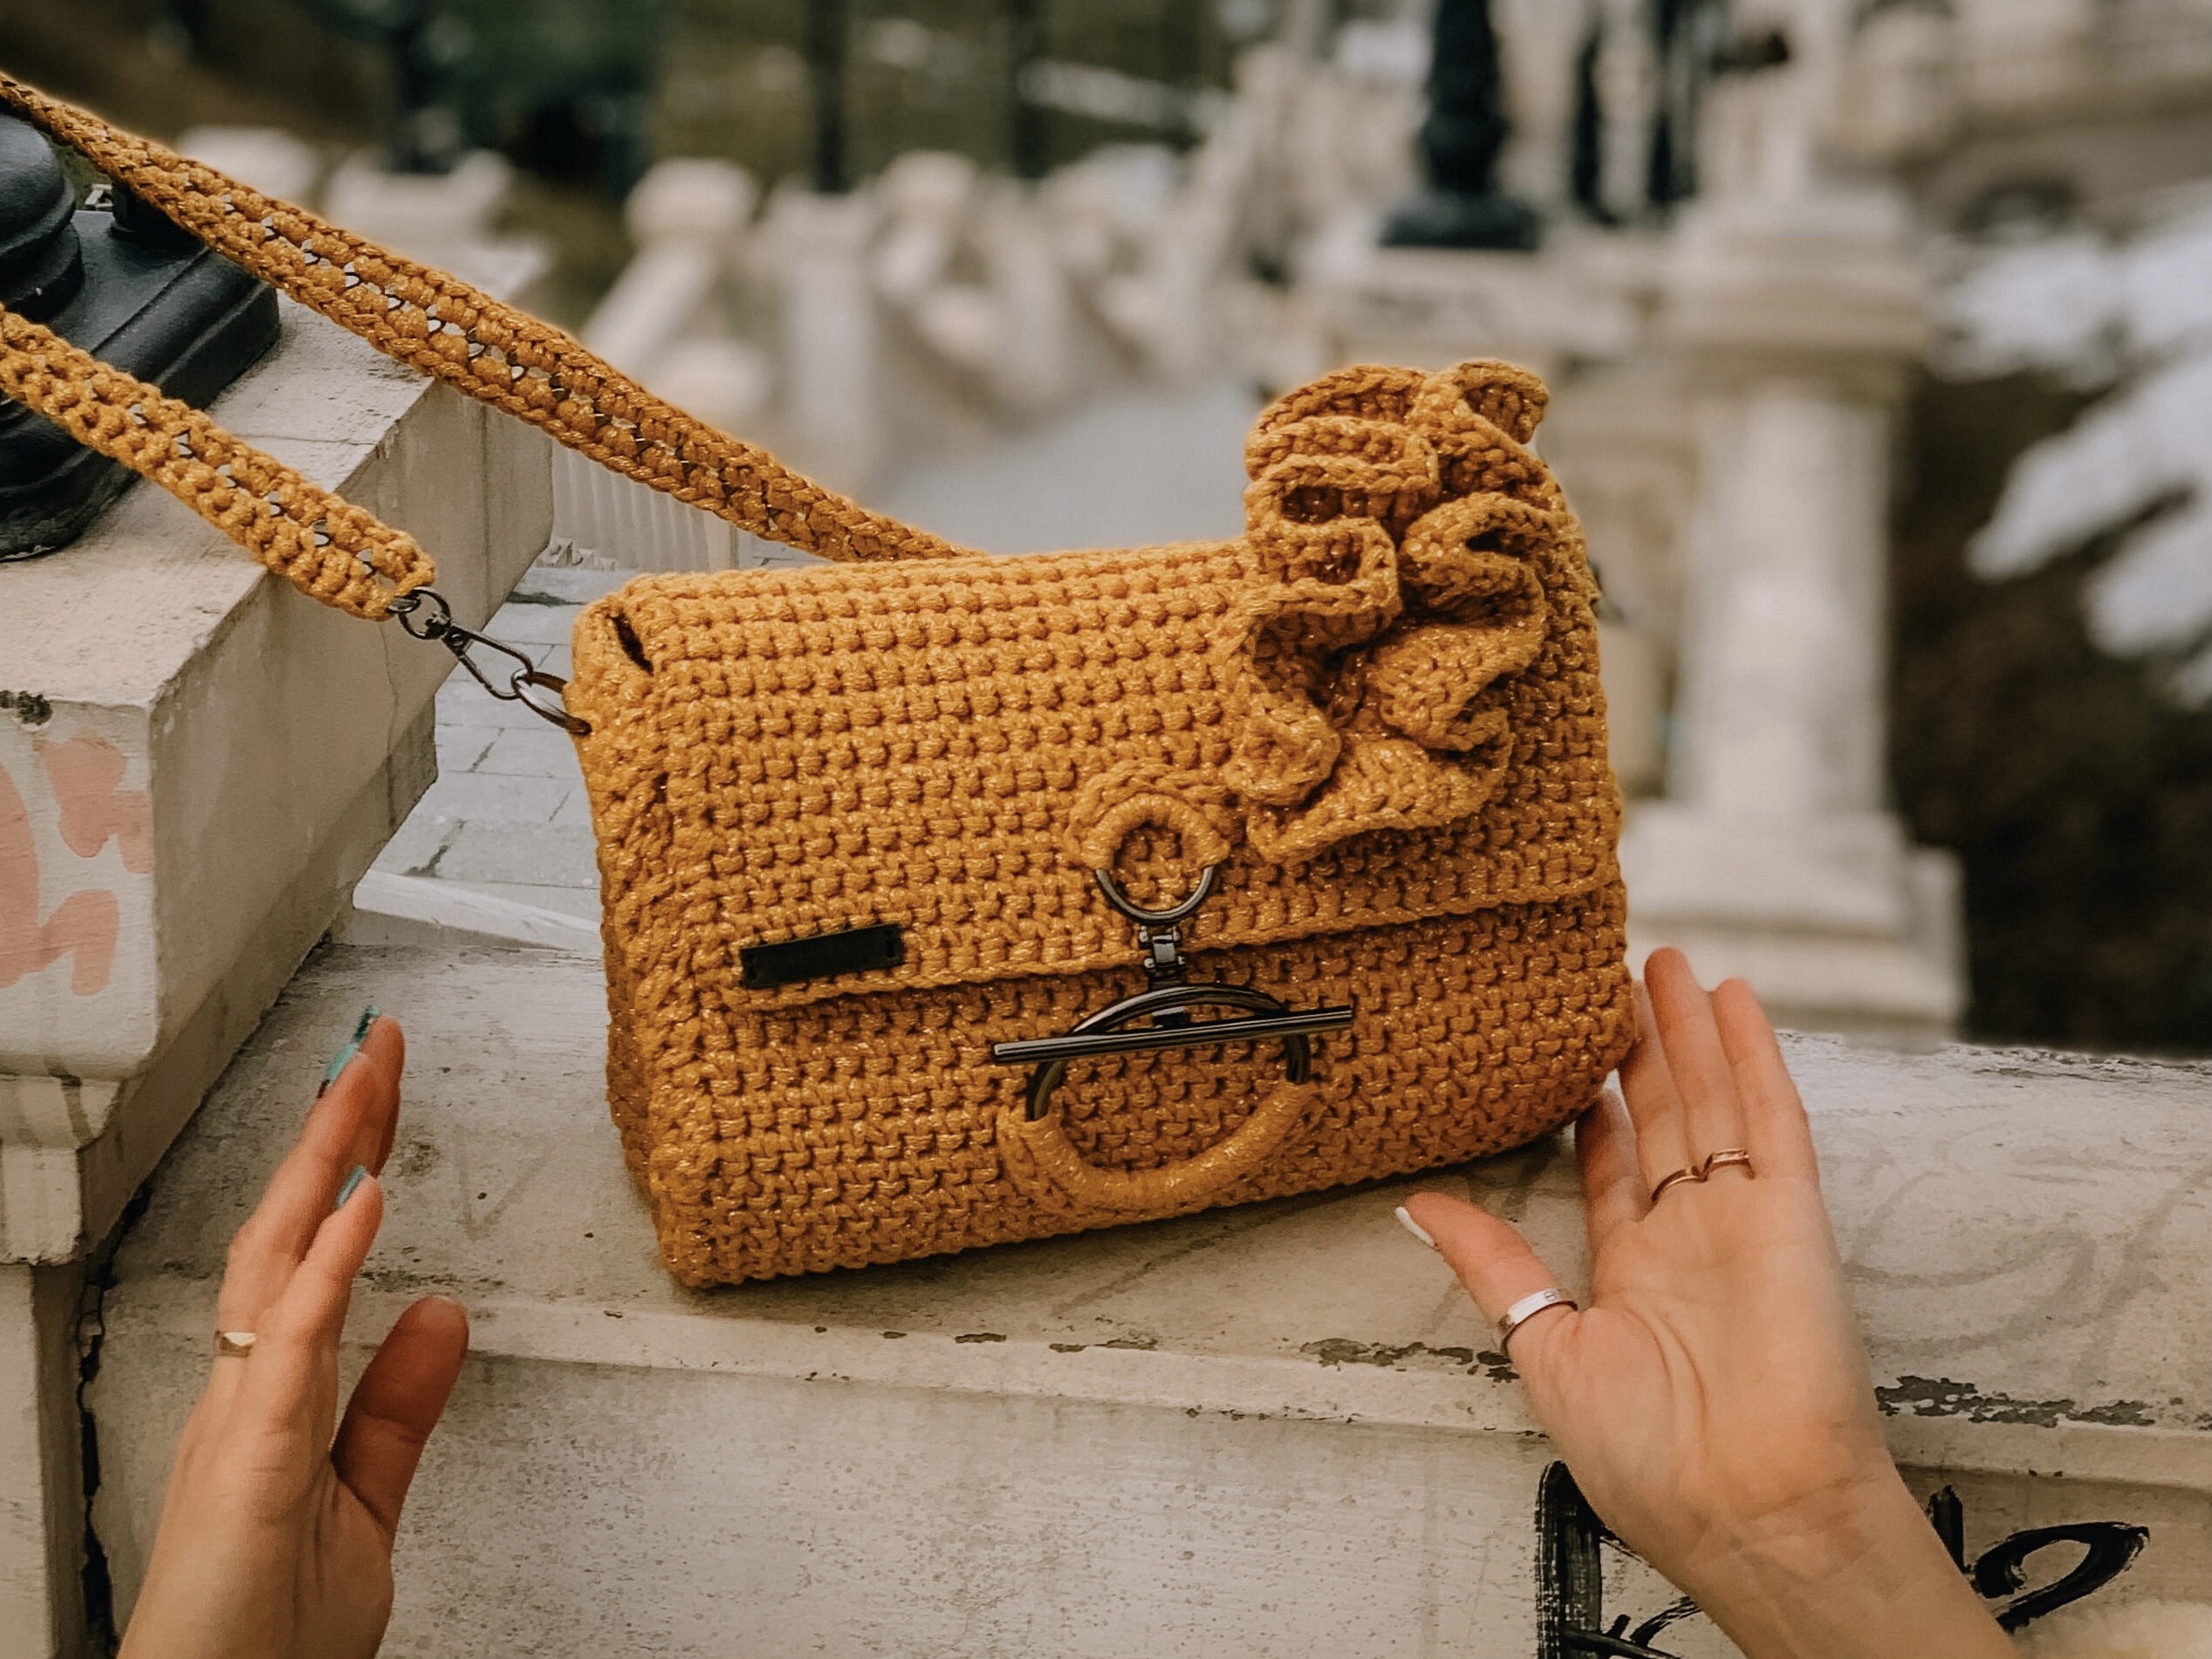 Crochet Round Bag with Raffia Yarn